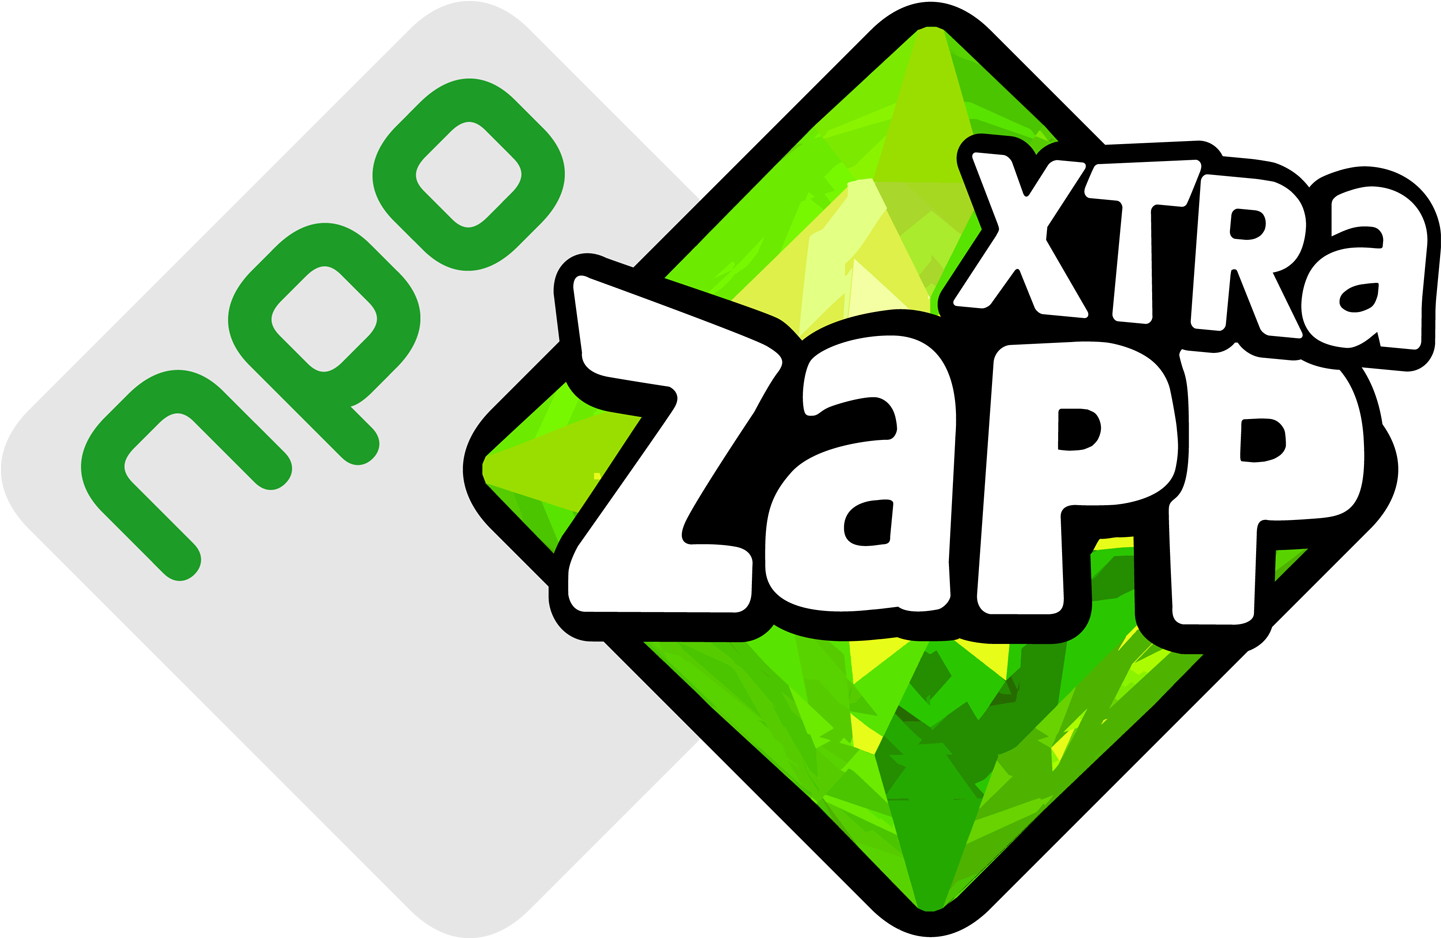 39, 11 February 2016 - Npo Zapp Logo (1500x1000)